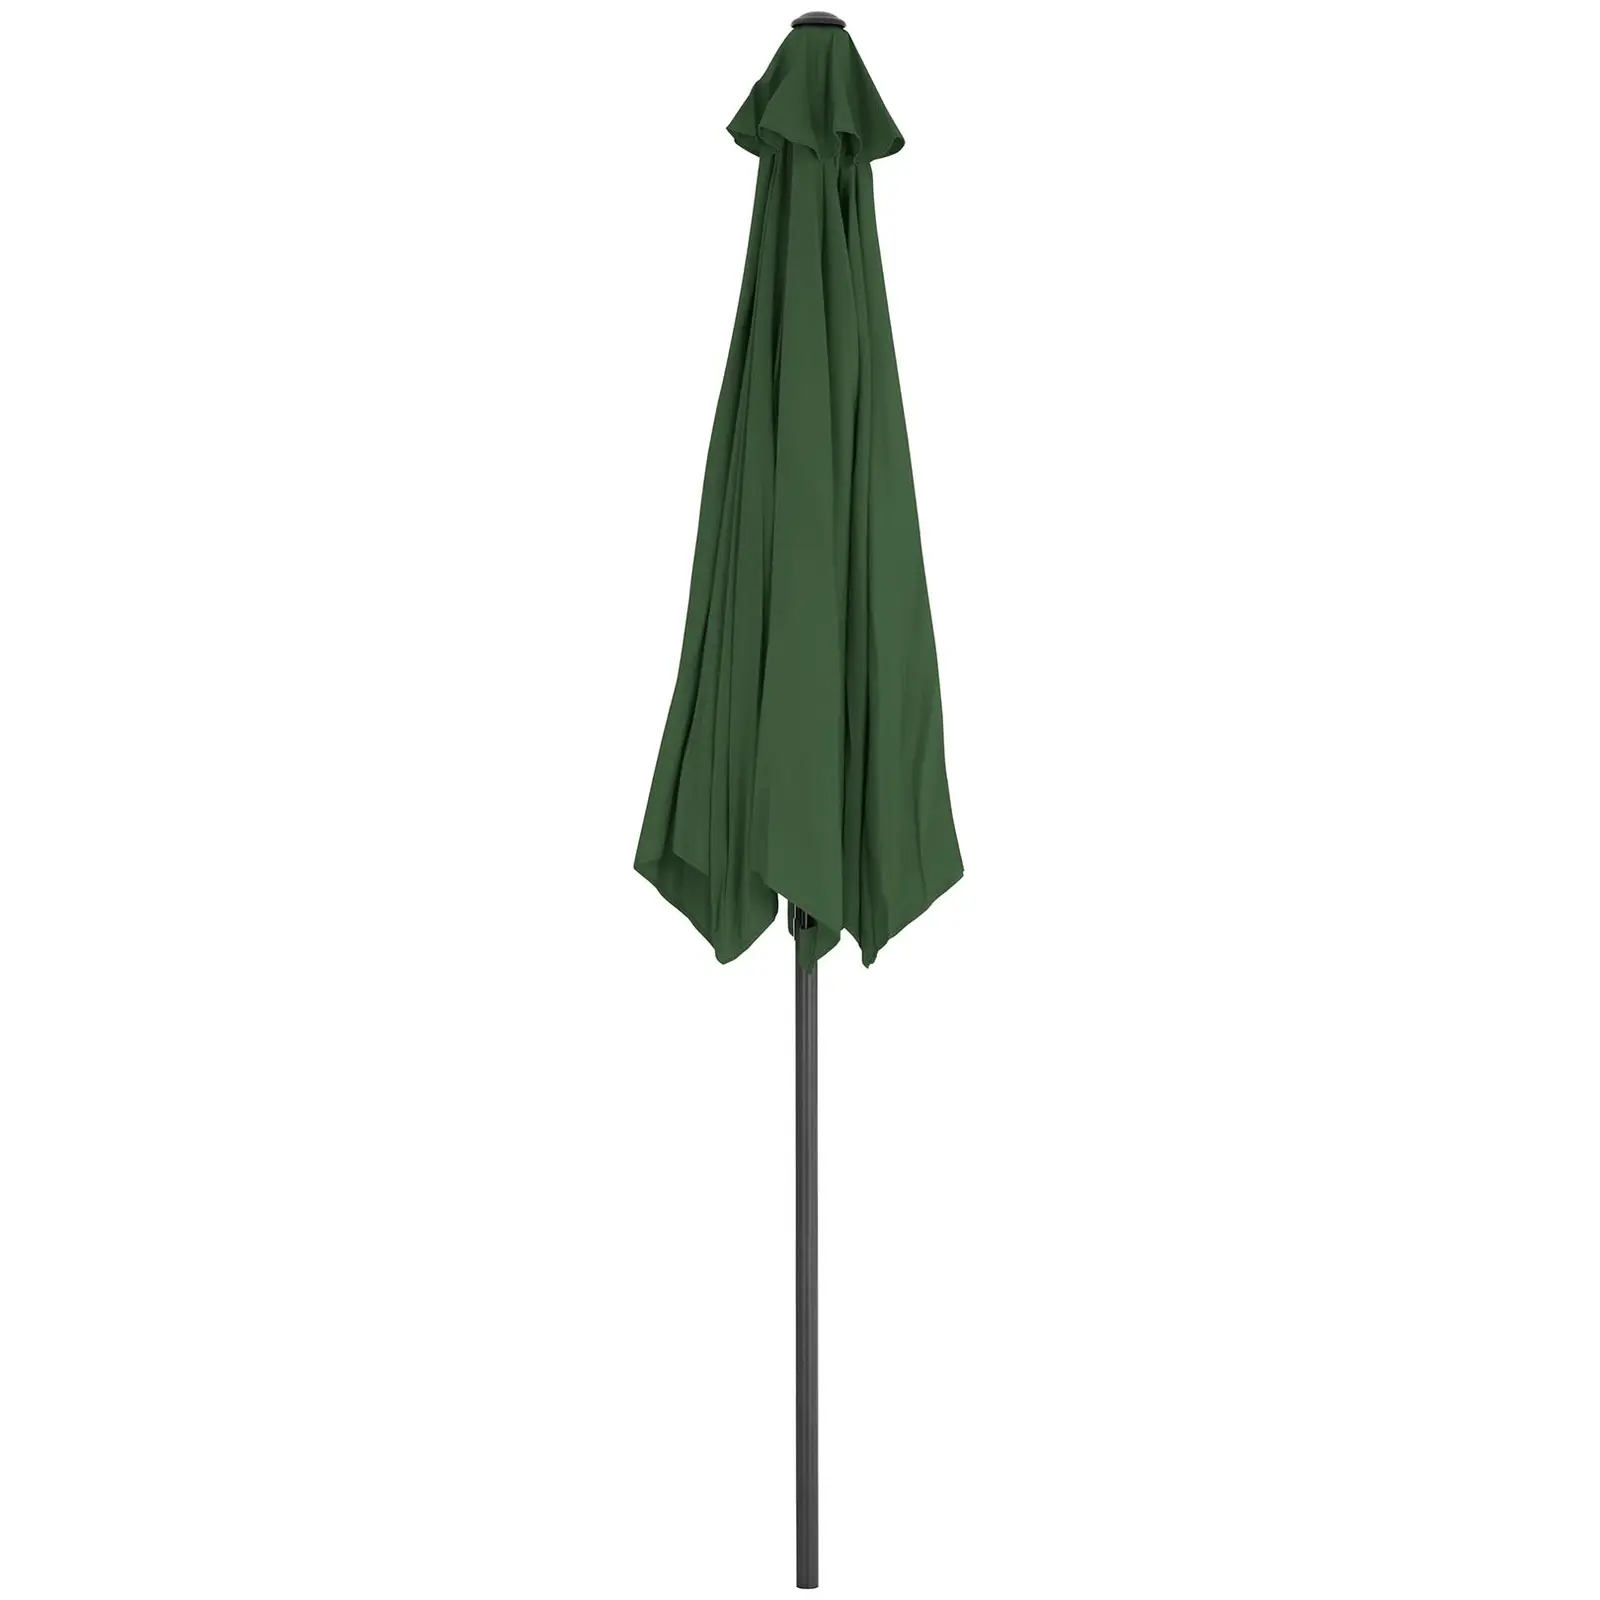 B-Ware Sonnenschirm groß - grün - sechseckig - Ø 270 cm - neigbar